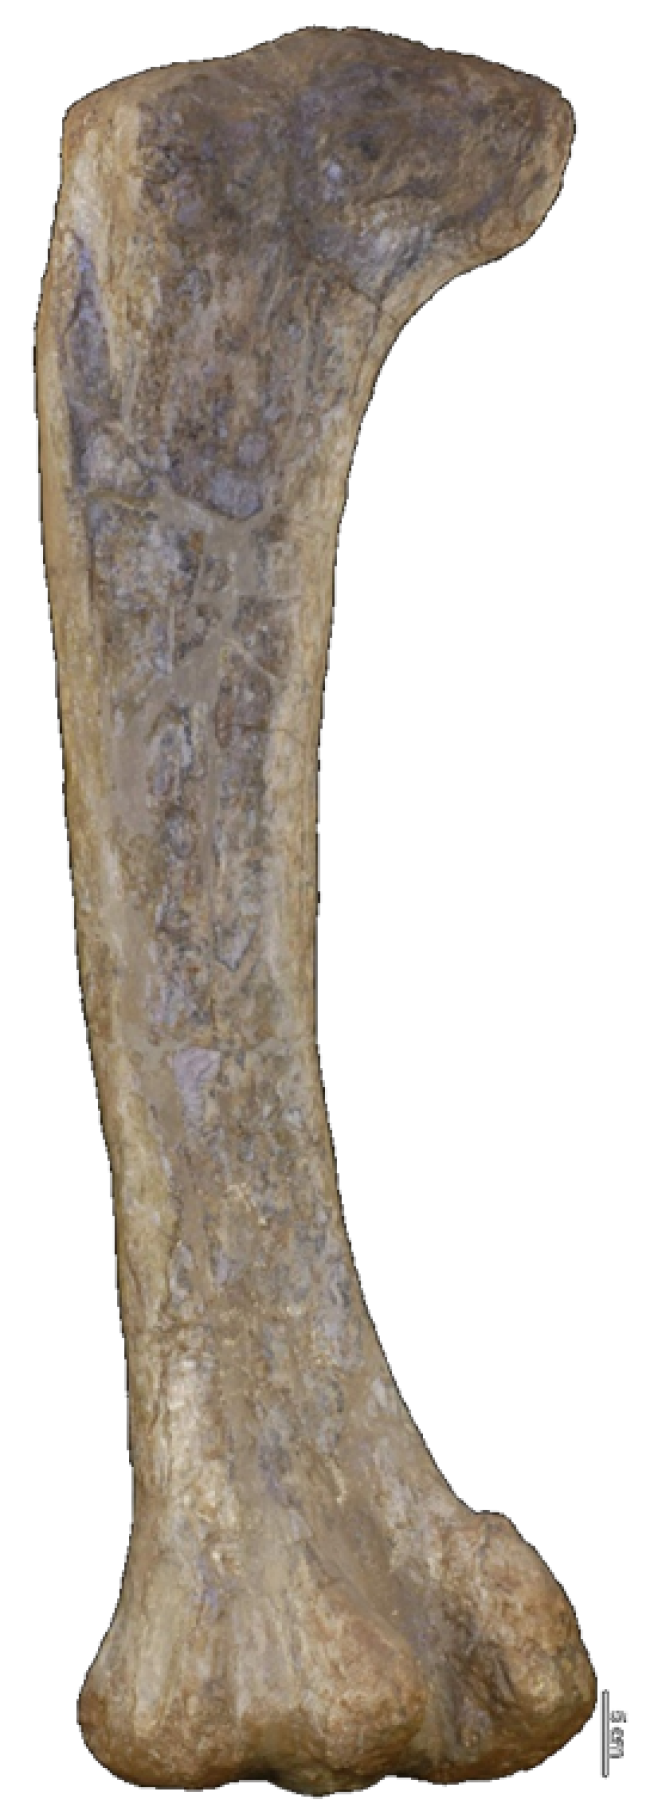 Fémur de Demandasaurus darwini que permite inferir algunas medidas. Alcanzaba los 3,5 metros y tenía una longitud de 12 metros.